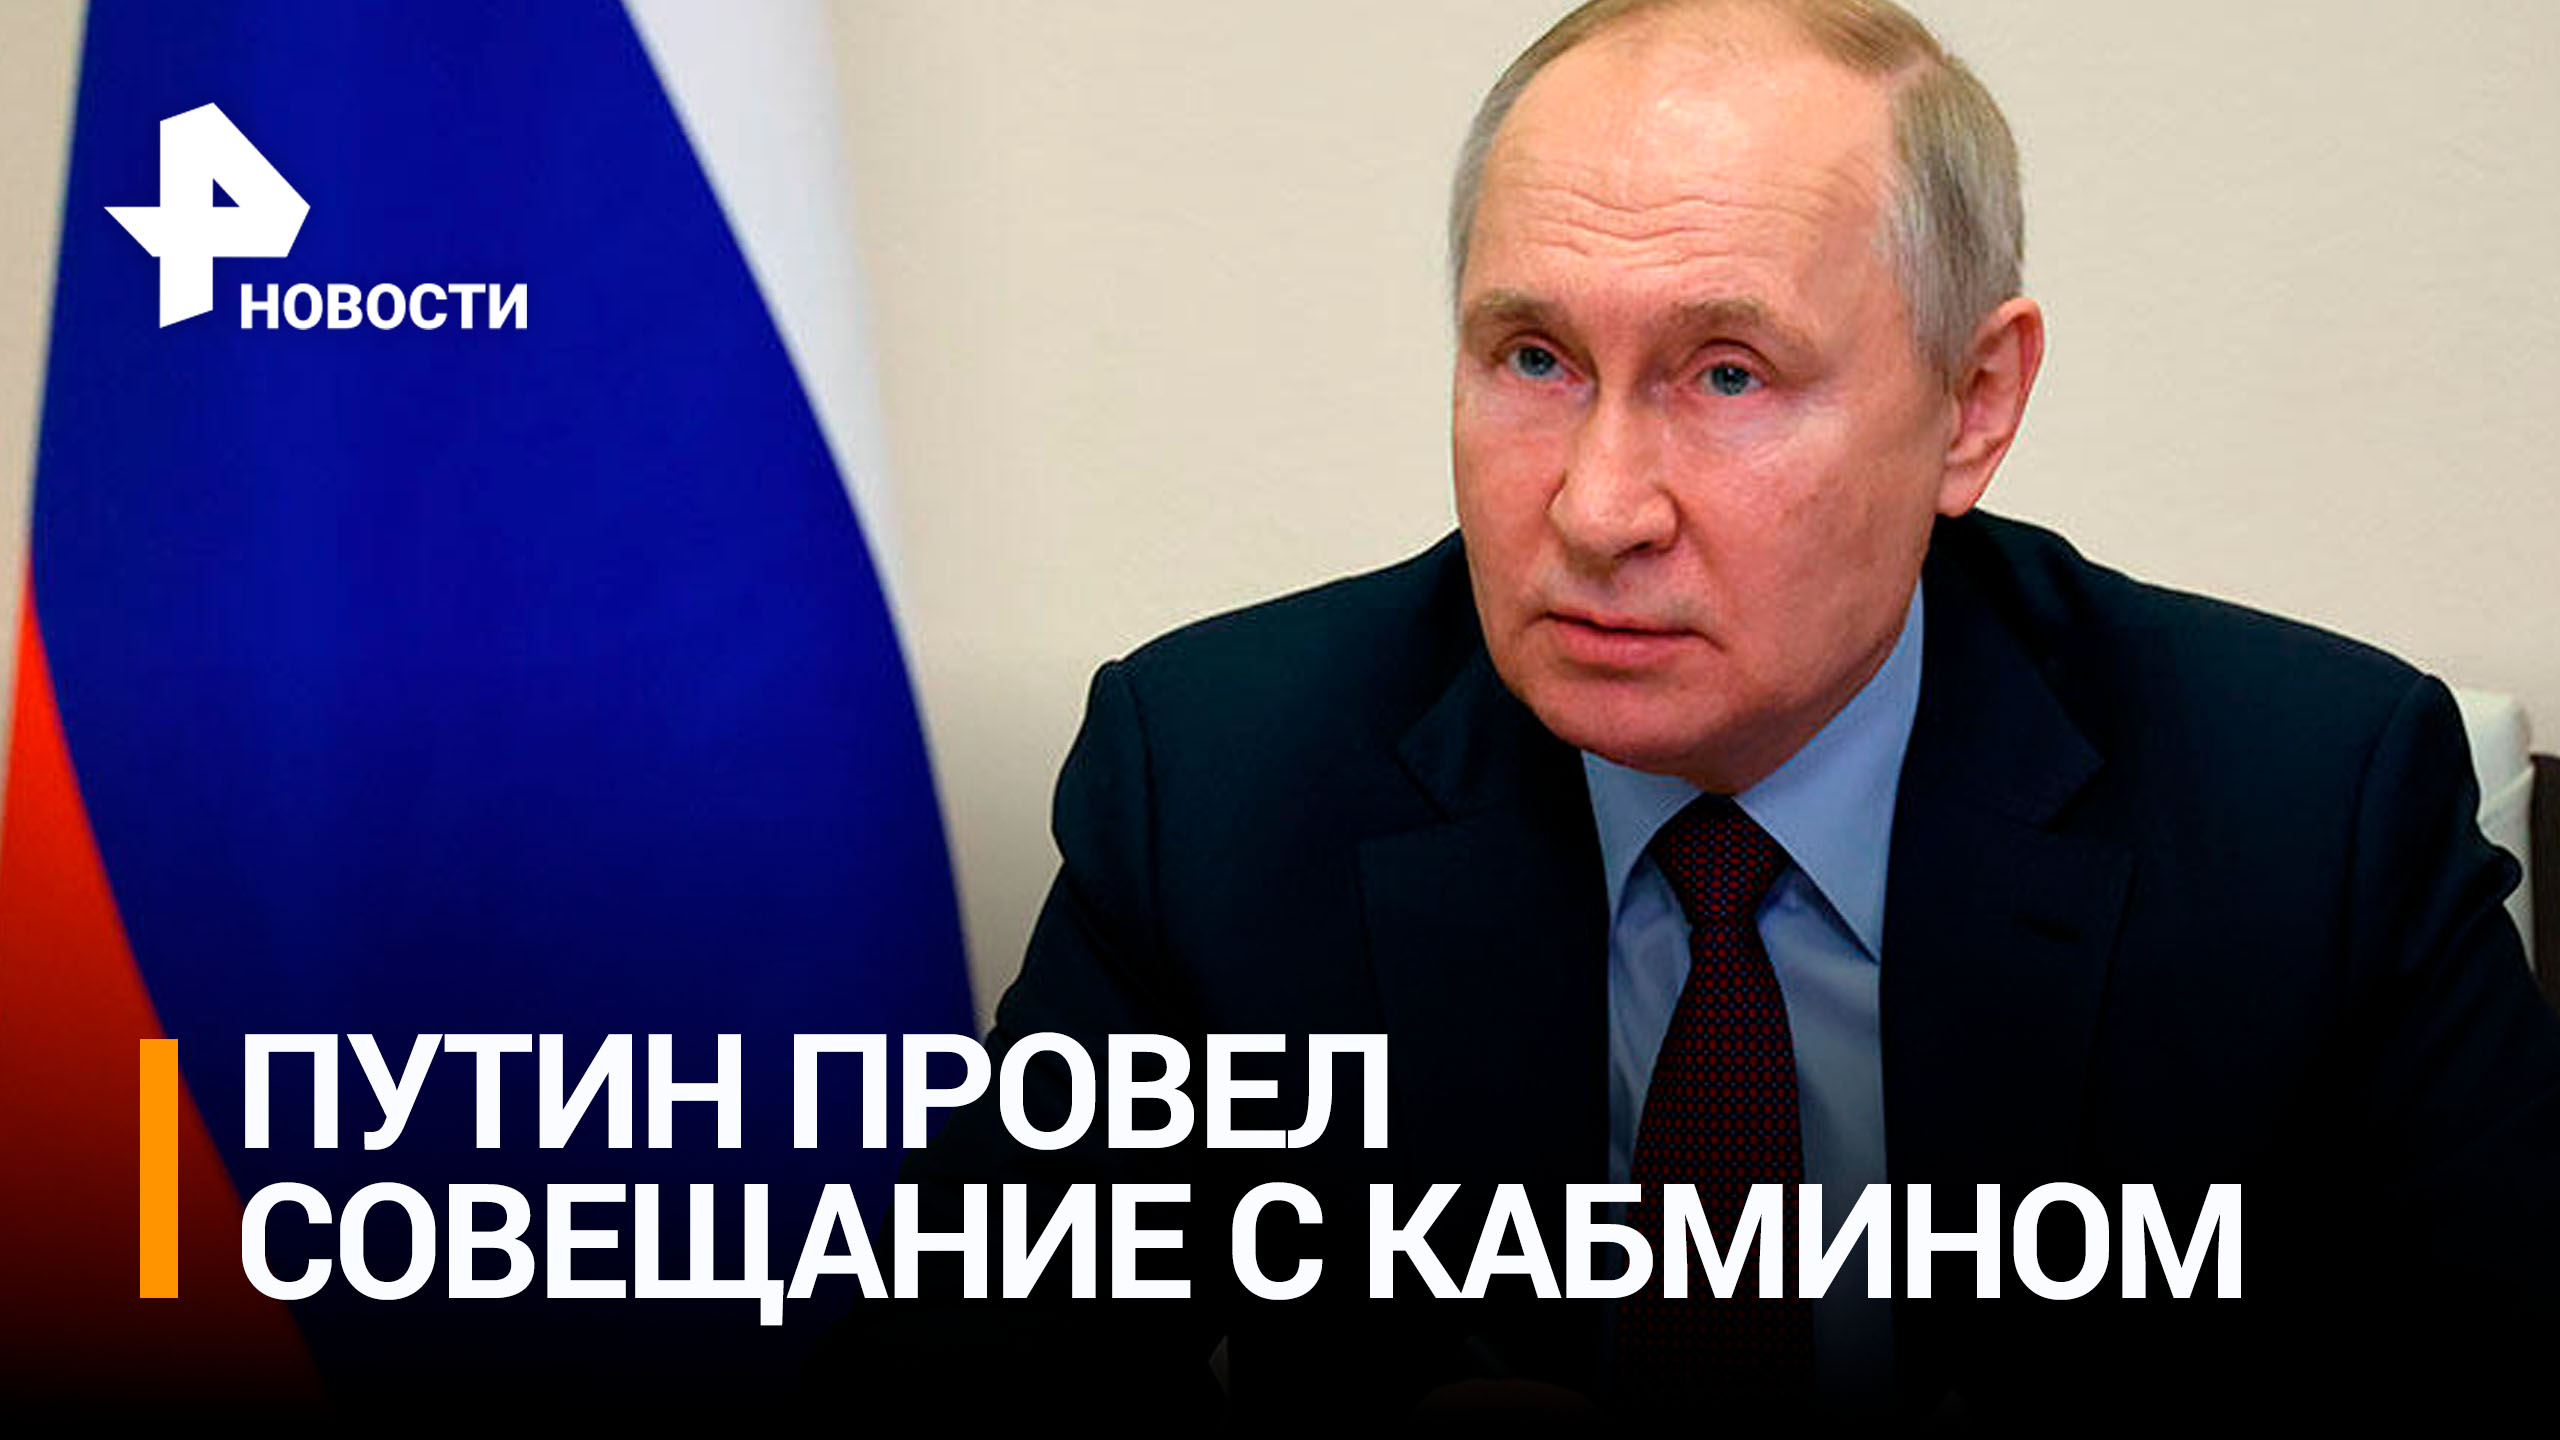 Путин обсудил с кабмином поддержку новых регионов: главное / РЕН Новости